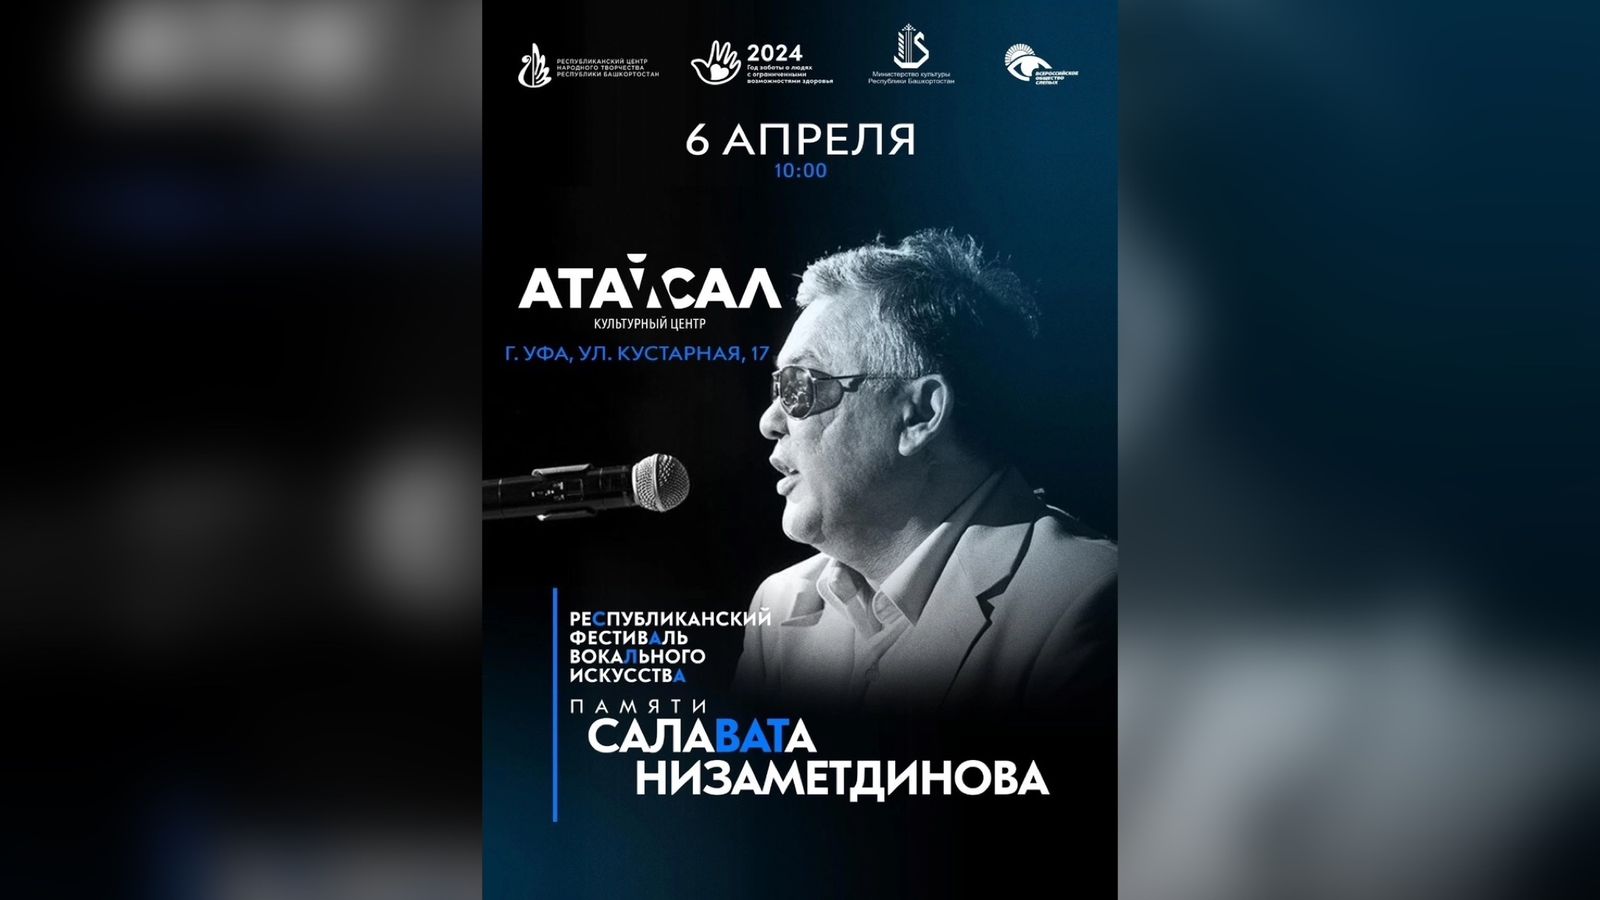 Республиканский фестиваль имени Салавата Низаметдинова перенесен на 6 апреля 